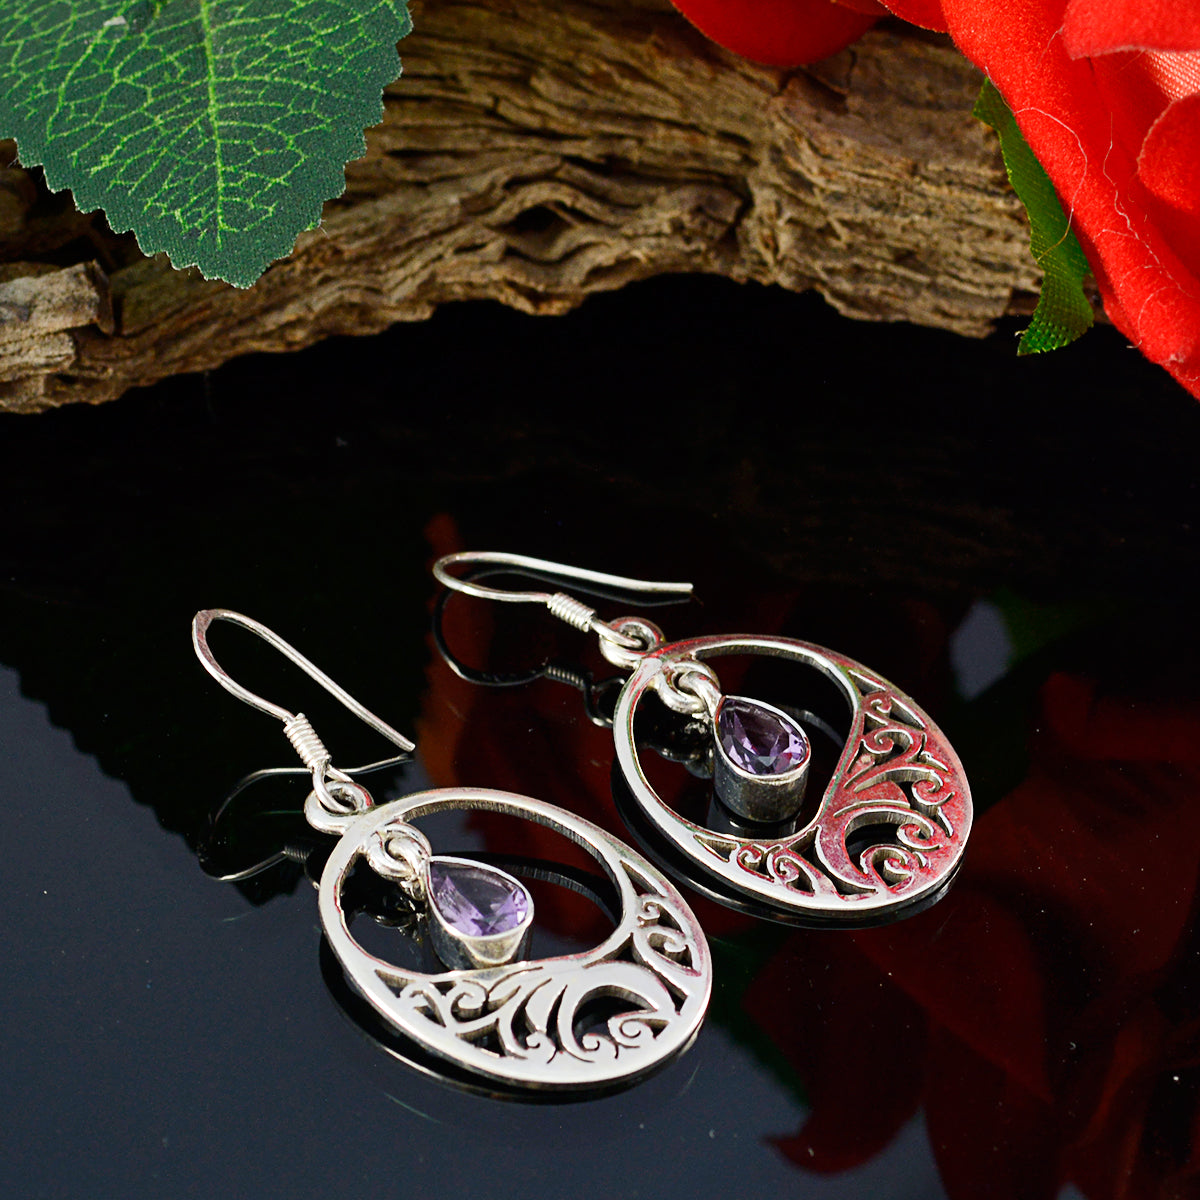 Riyo Real Gemstones Pear Faceted Purple Amethyst Silver Earring mom gift